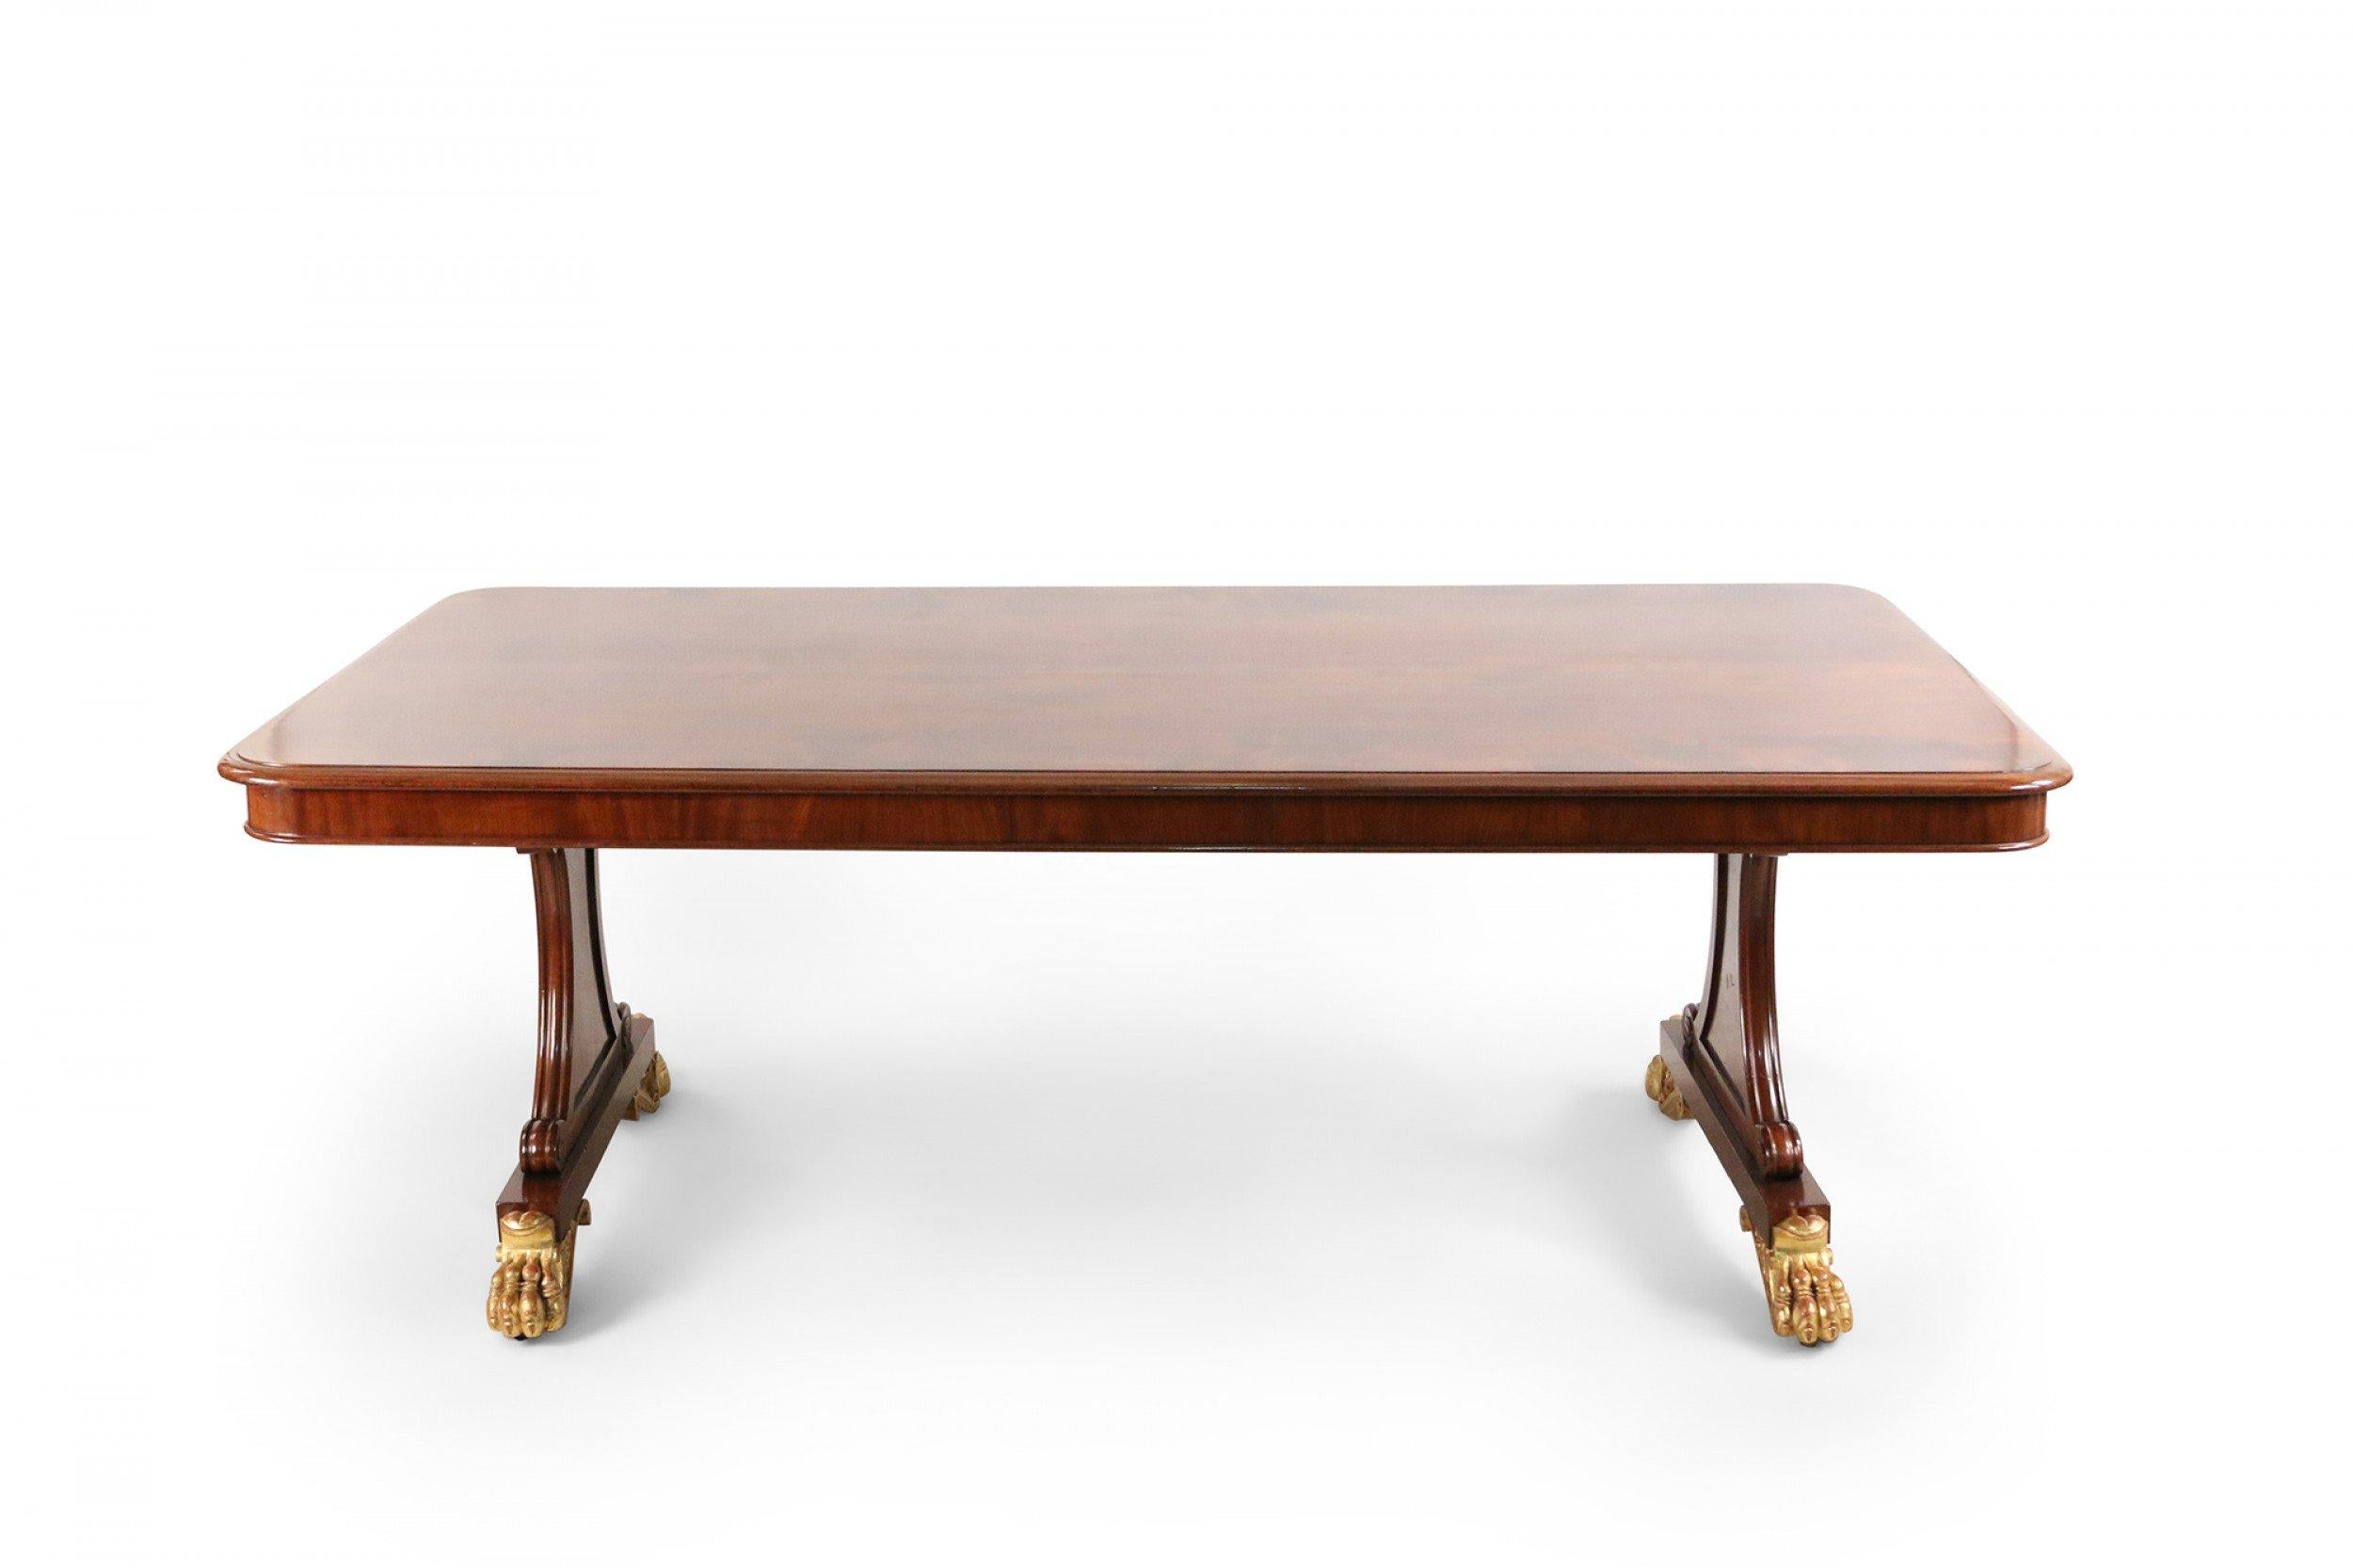 Table de salle à manger rectangulaire à double piédestal en acajou de style Régence anglais, avec pieds griffes dorés.